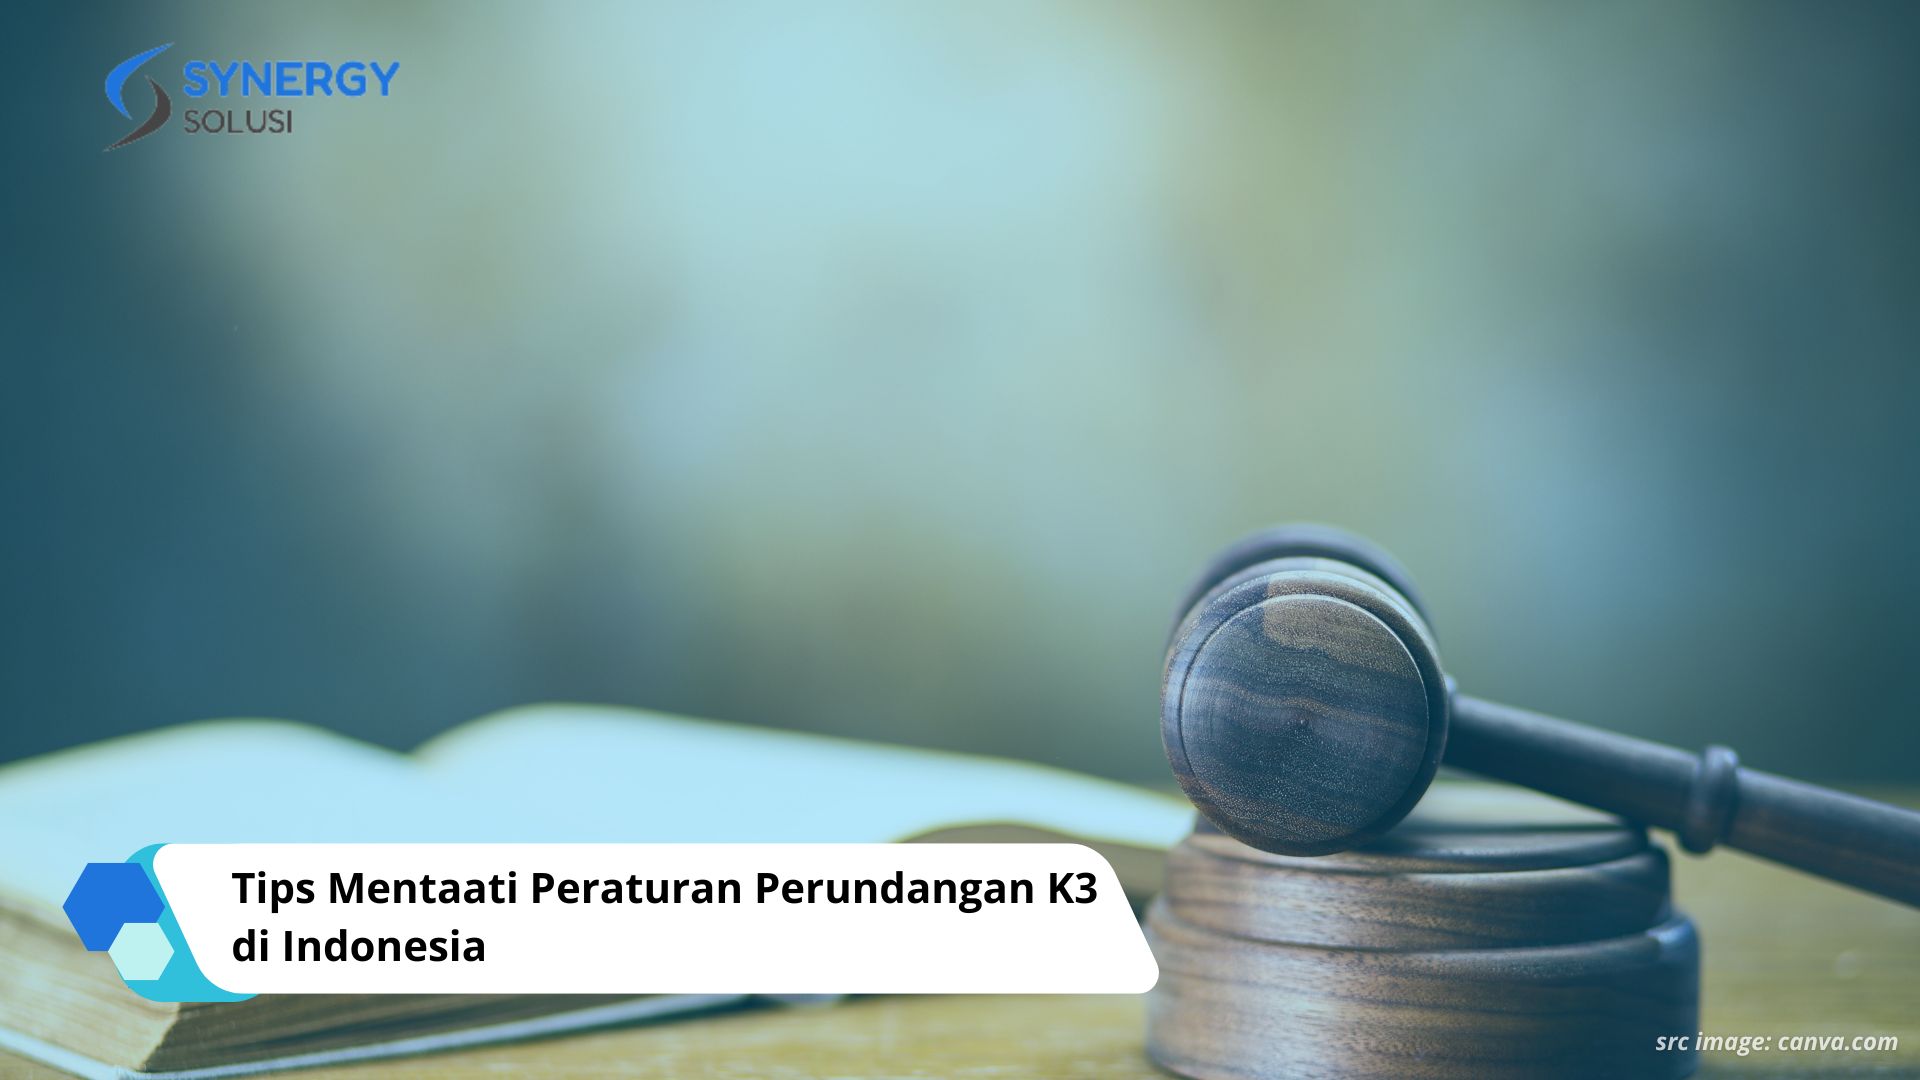 Tips Mentaati Peraturan Perundangan K3 di Indonesia: Panduan Menuju Lingkungan Kerja yang Aman dan Sehat